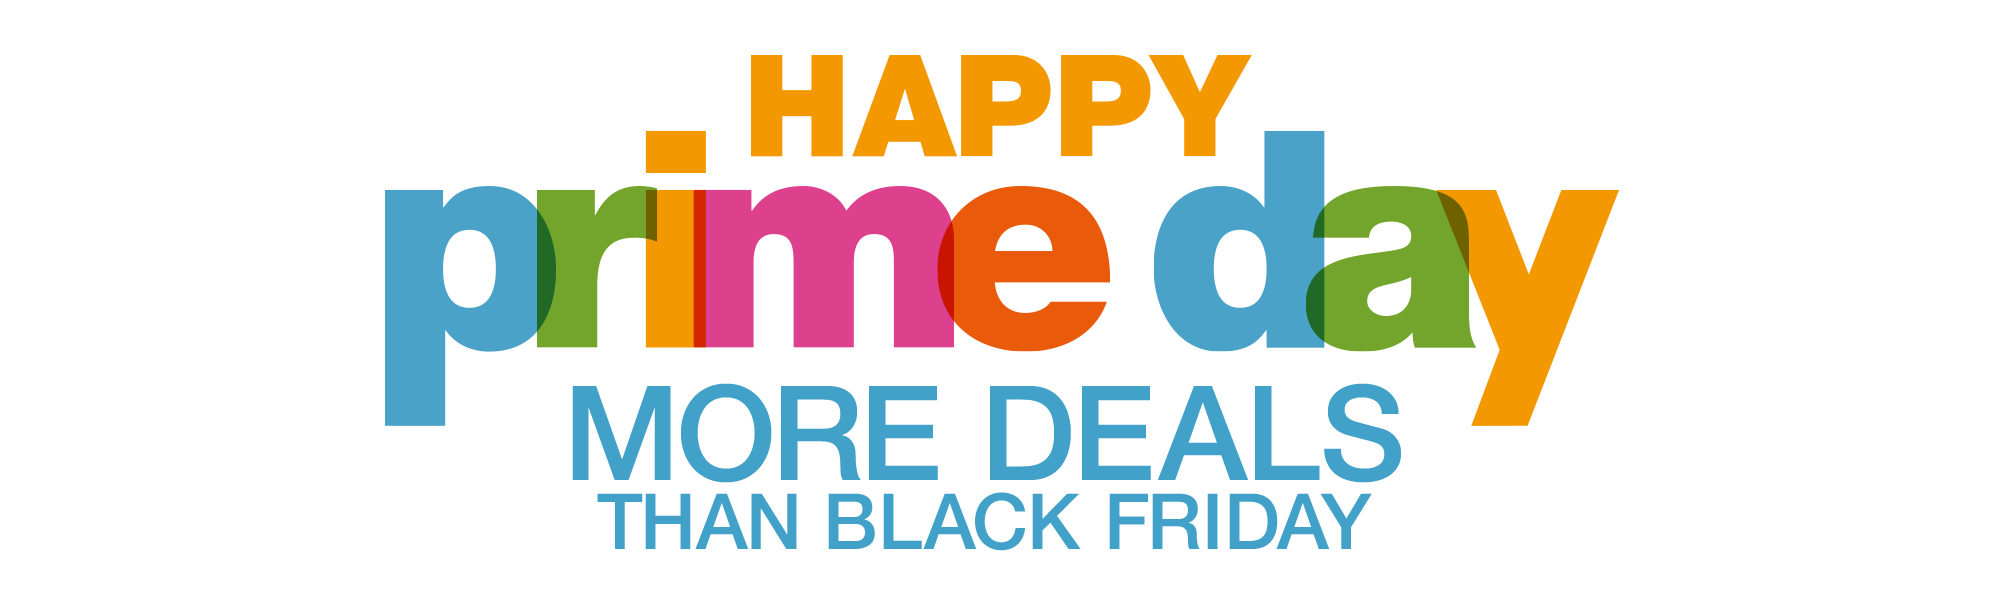 Amazon Prime Day, Amazon's Version of Black Friday ... - Amazon Prime Day Logo